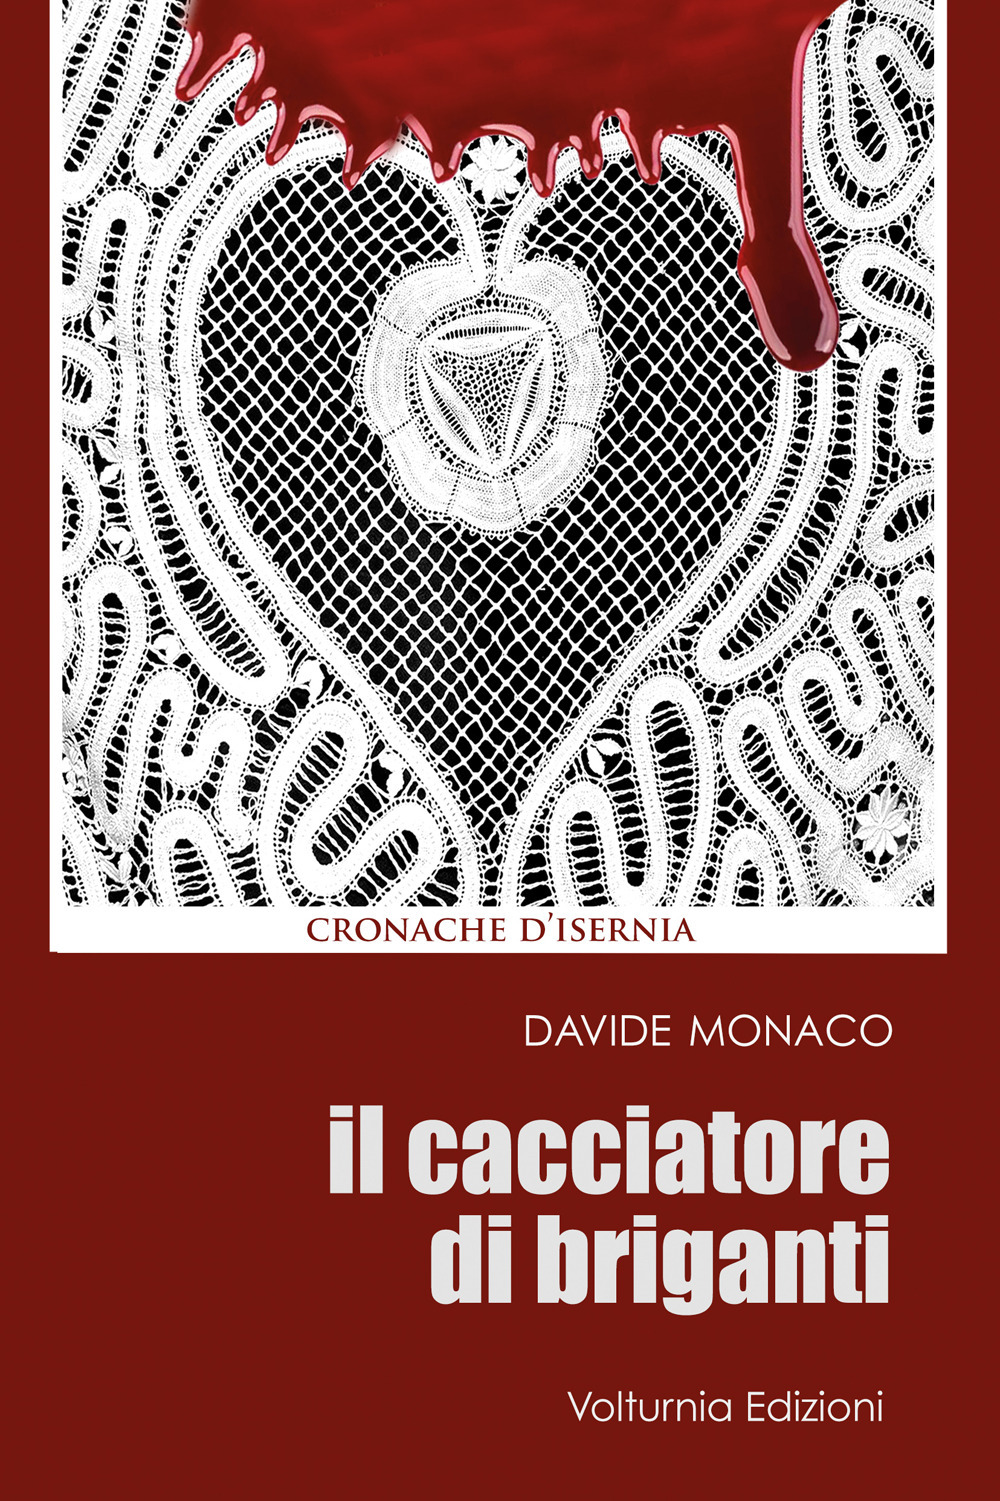 Libri Davide Monaco - Il Cacciatore Di Briganti NUOVO SIGILLATO, EDIZIONE DEL 14/12/2020 SUBITO DISPONIBILE